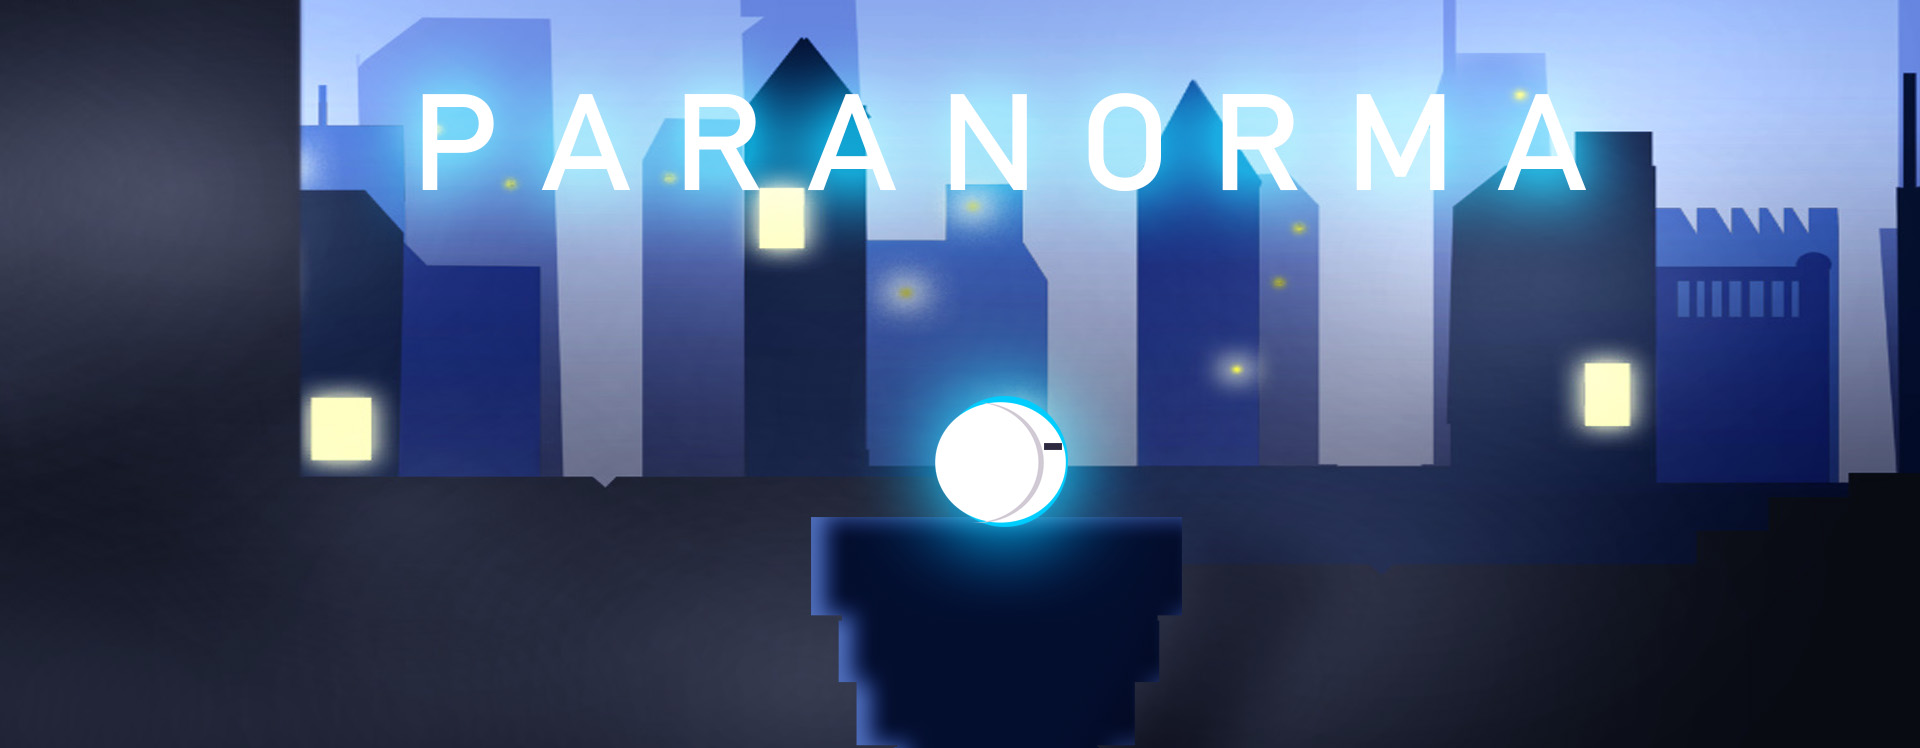 Paranorma - An AI Bot